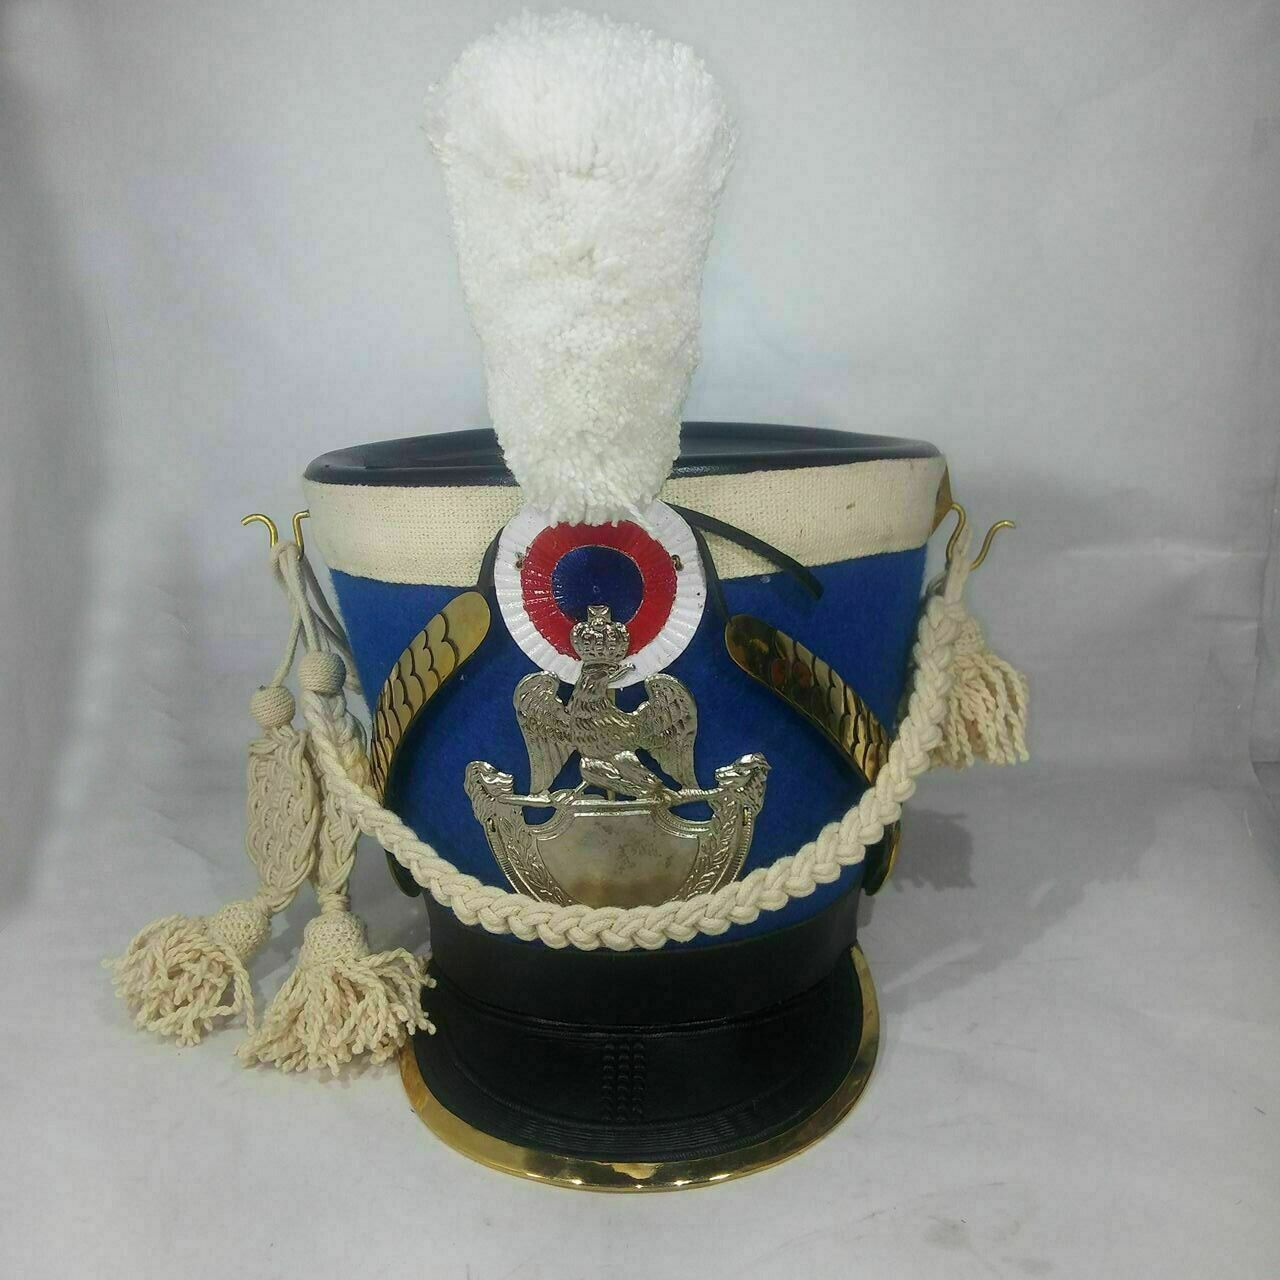 DGH® Nepoleonic Era Blue Shako Hat+ White Long Pompom + White Cordon ASA FS